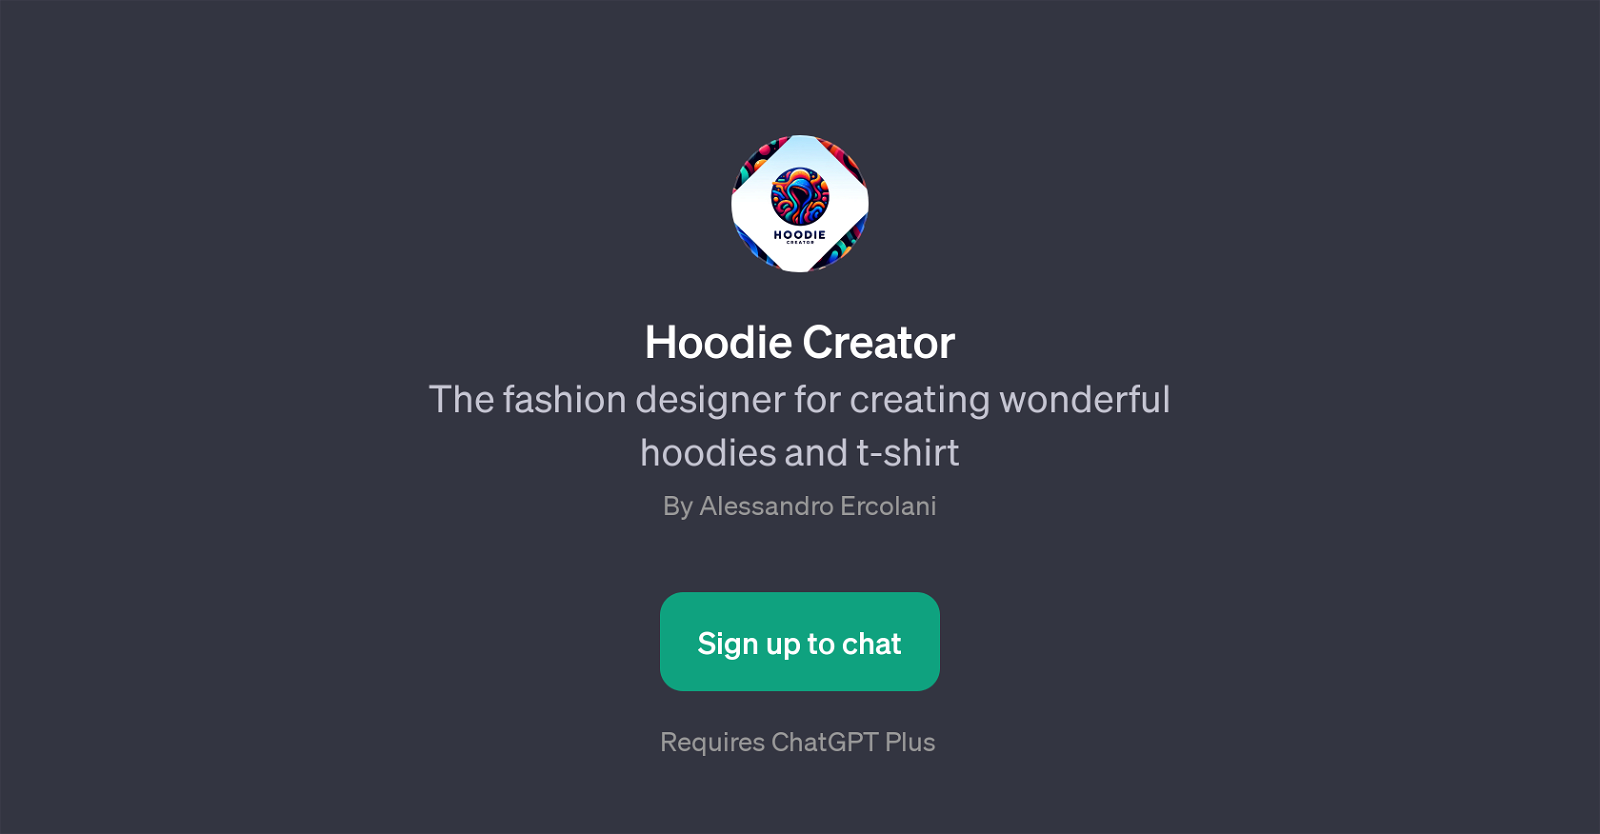 Hoodie Creator website